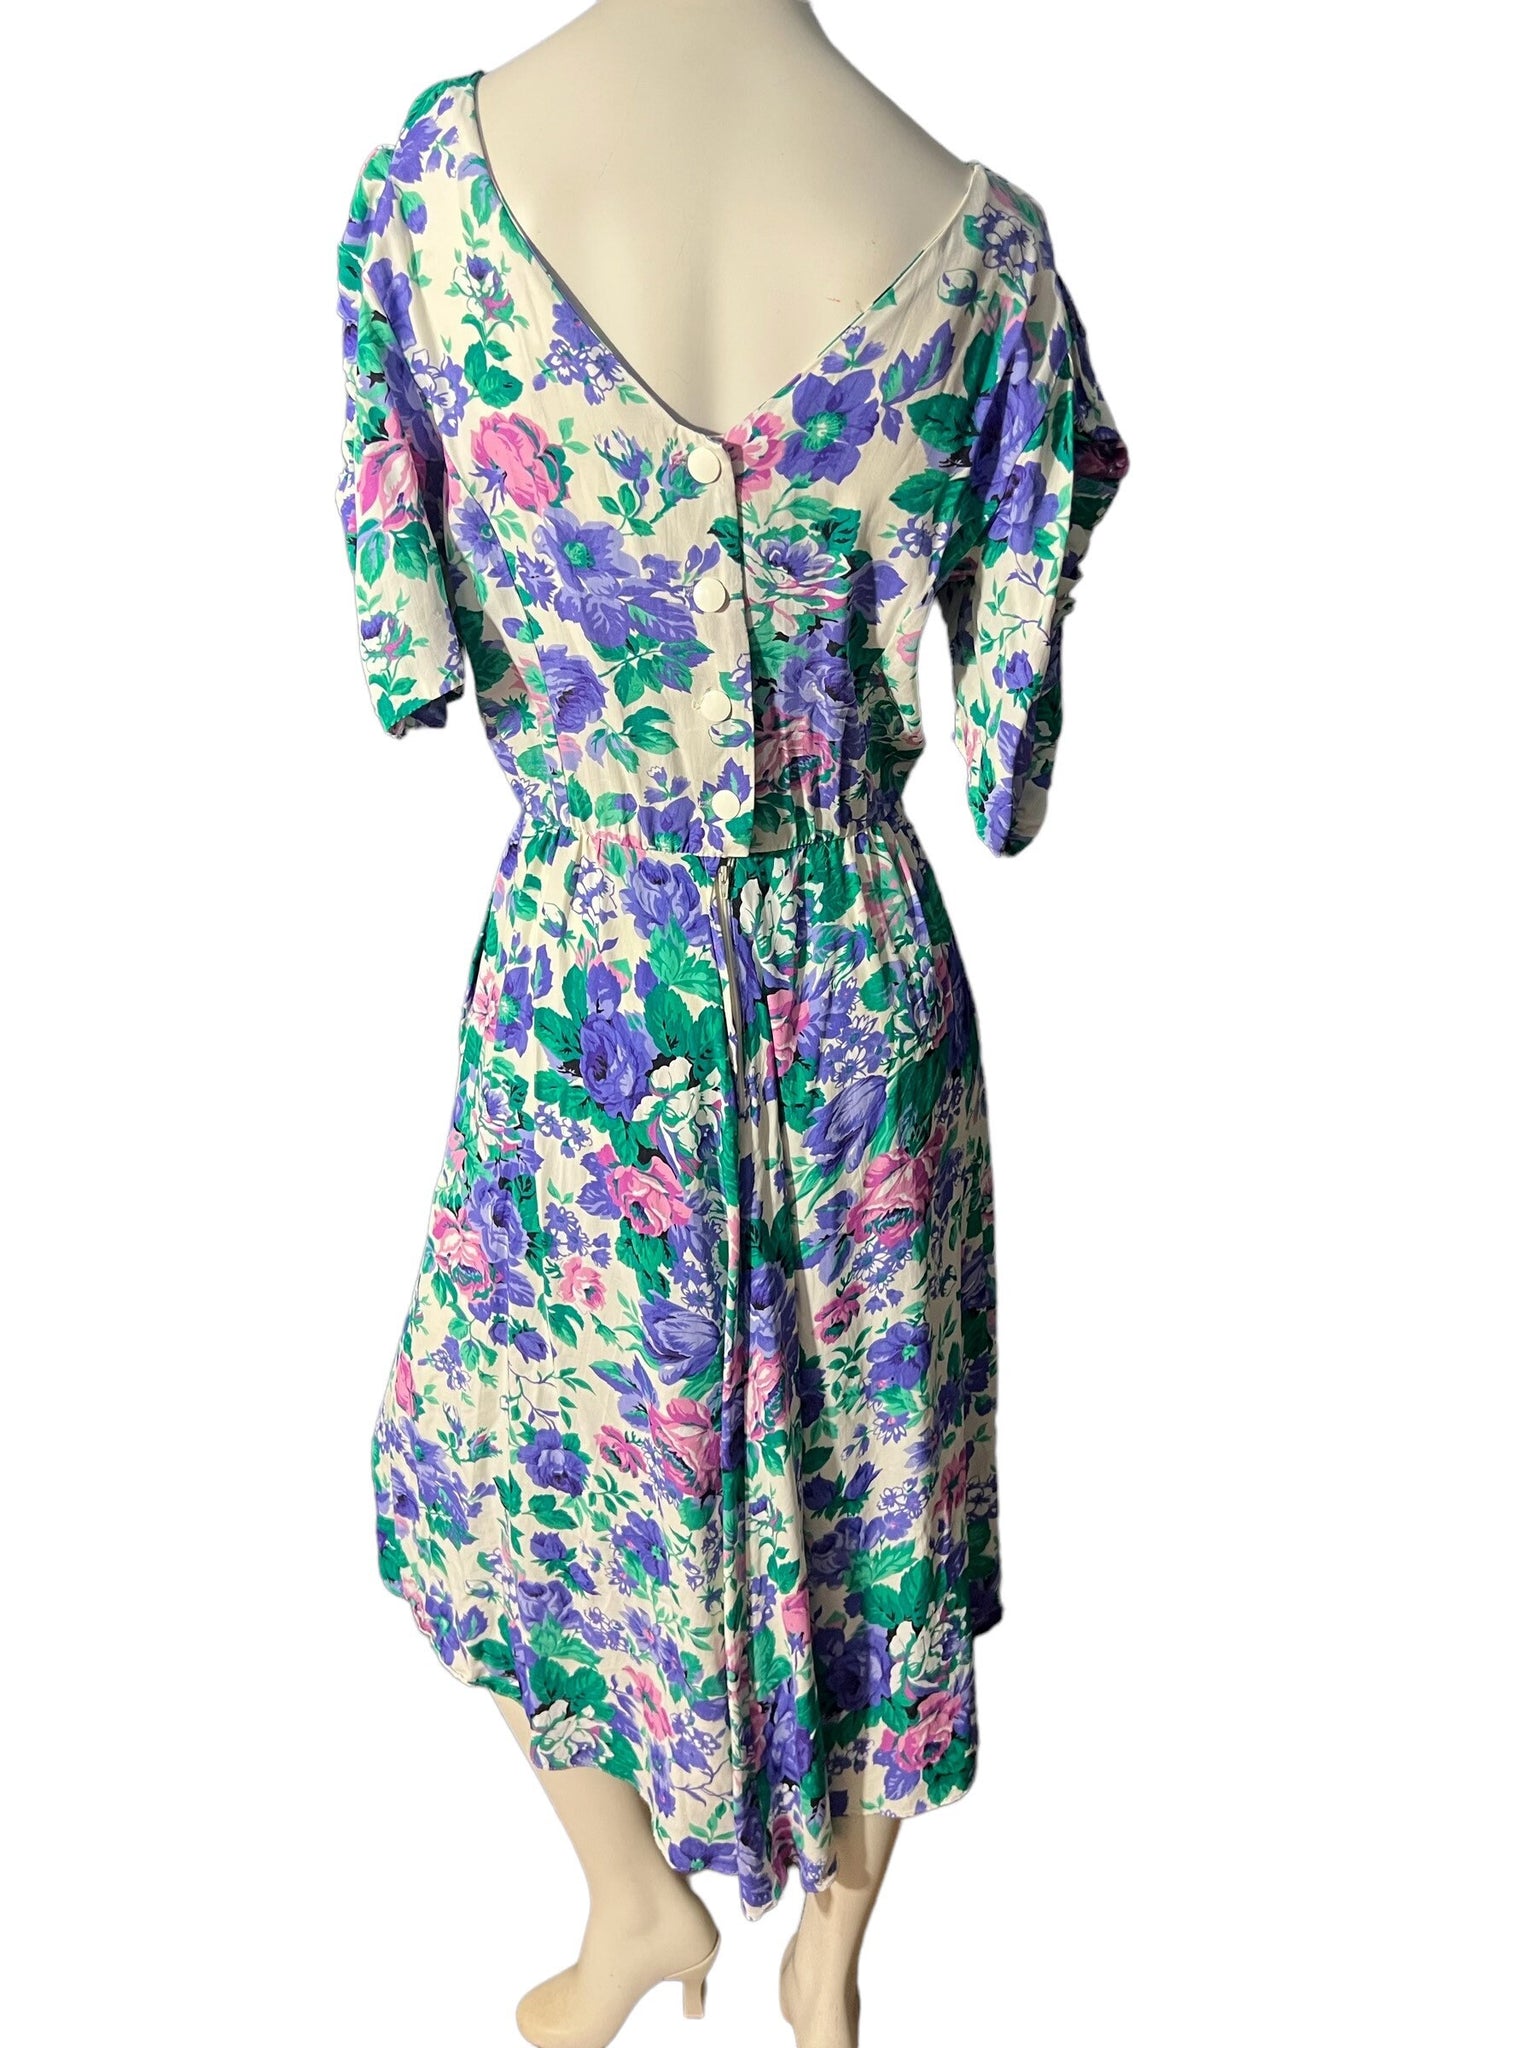 Vintage 80's floral rayon dress M L E.D. Michaels